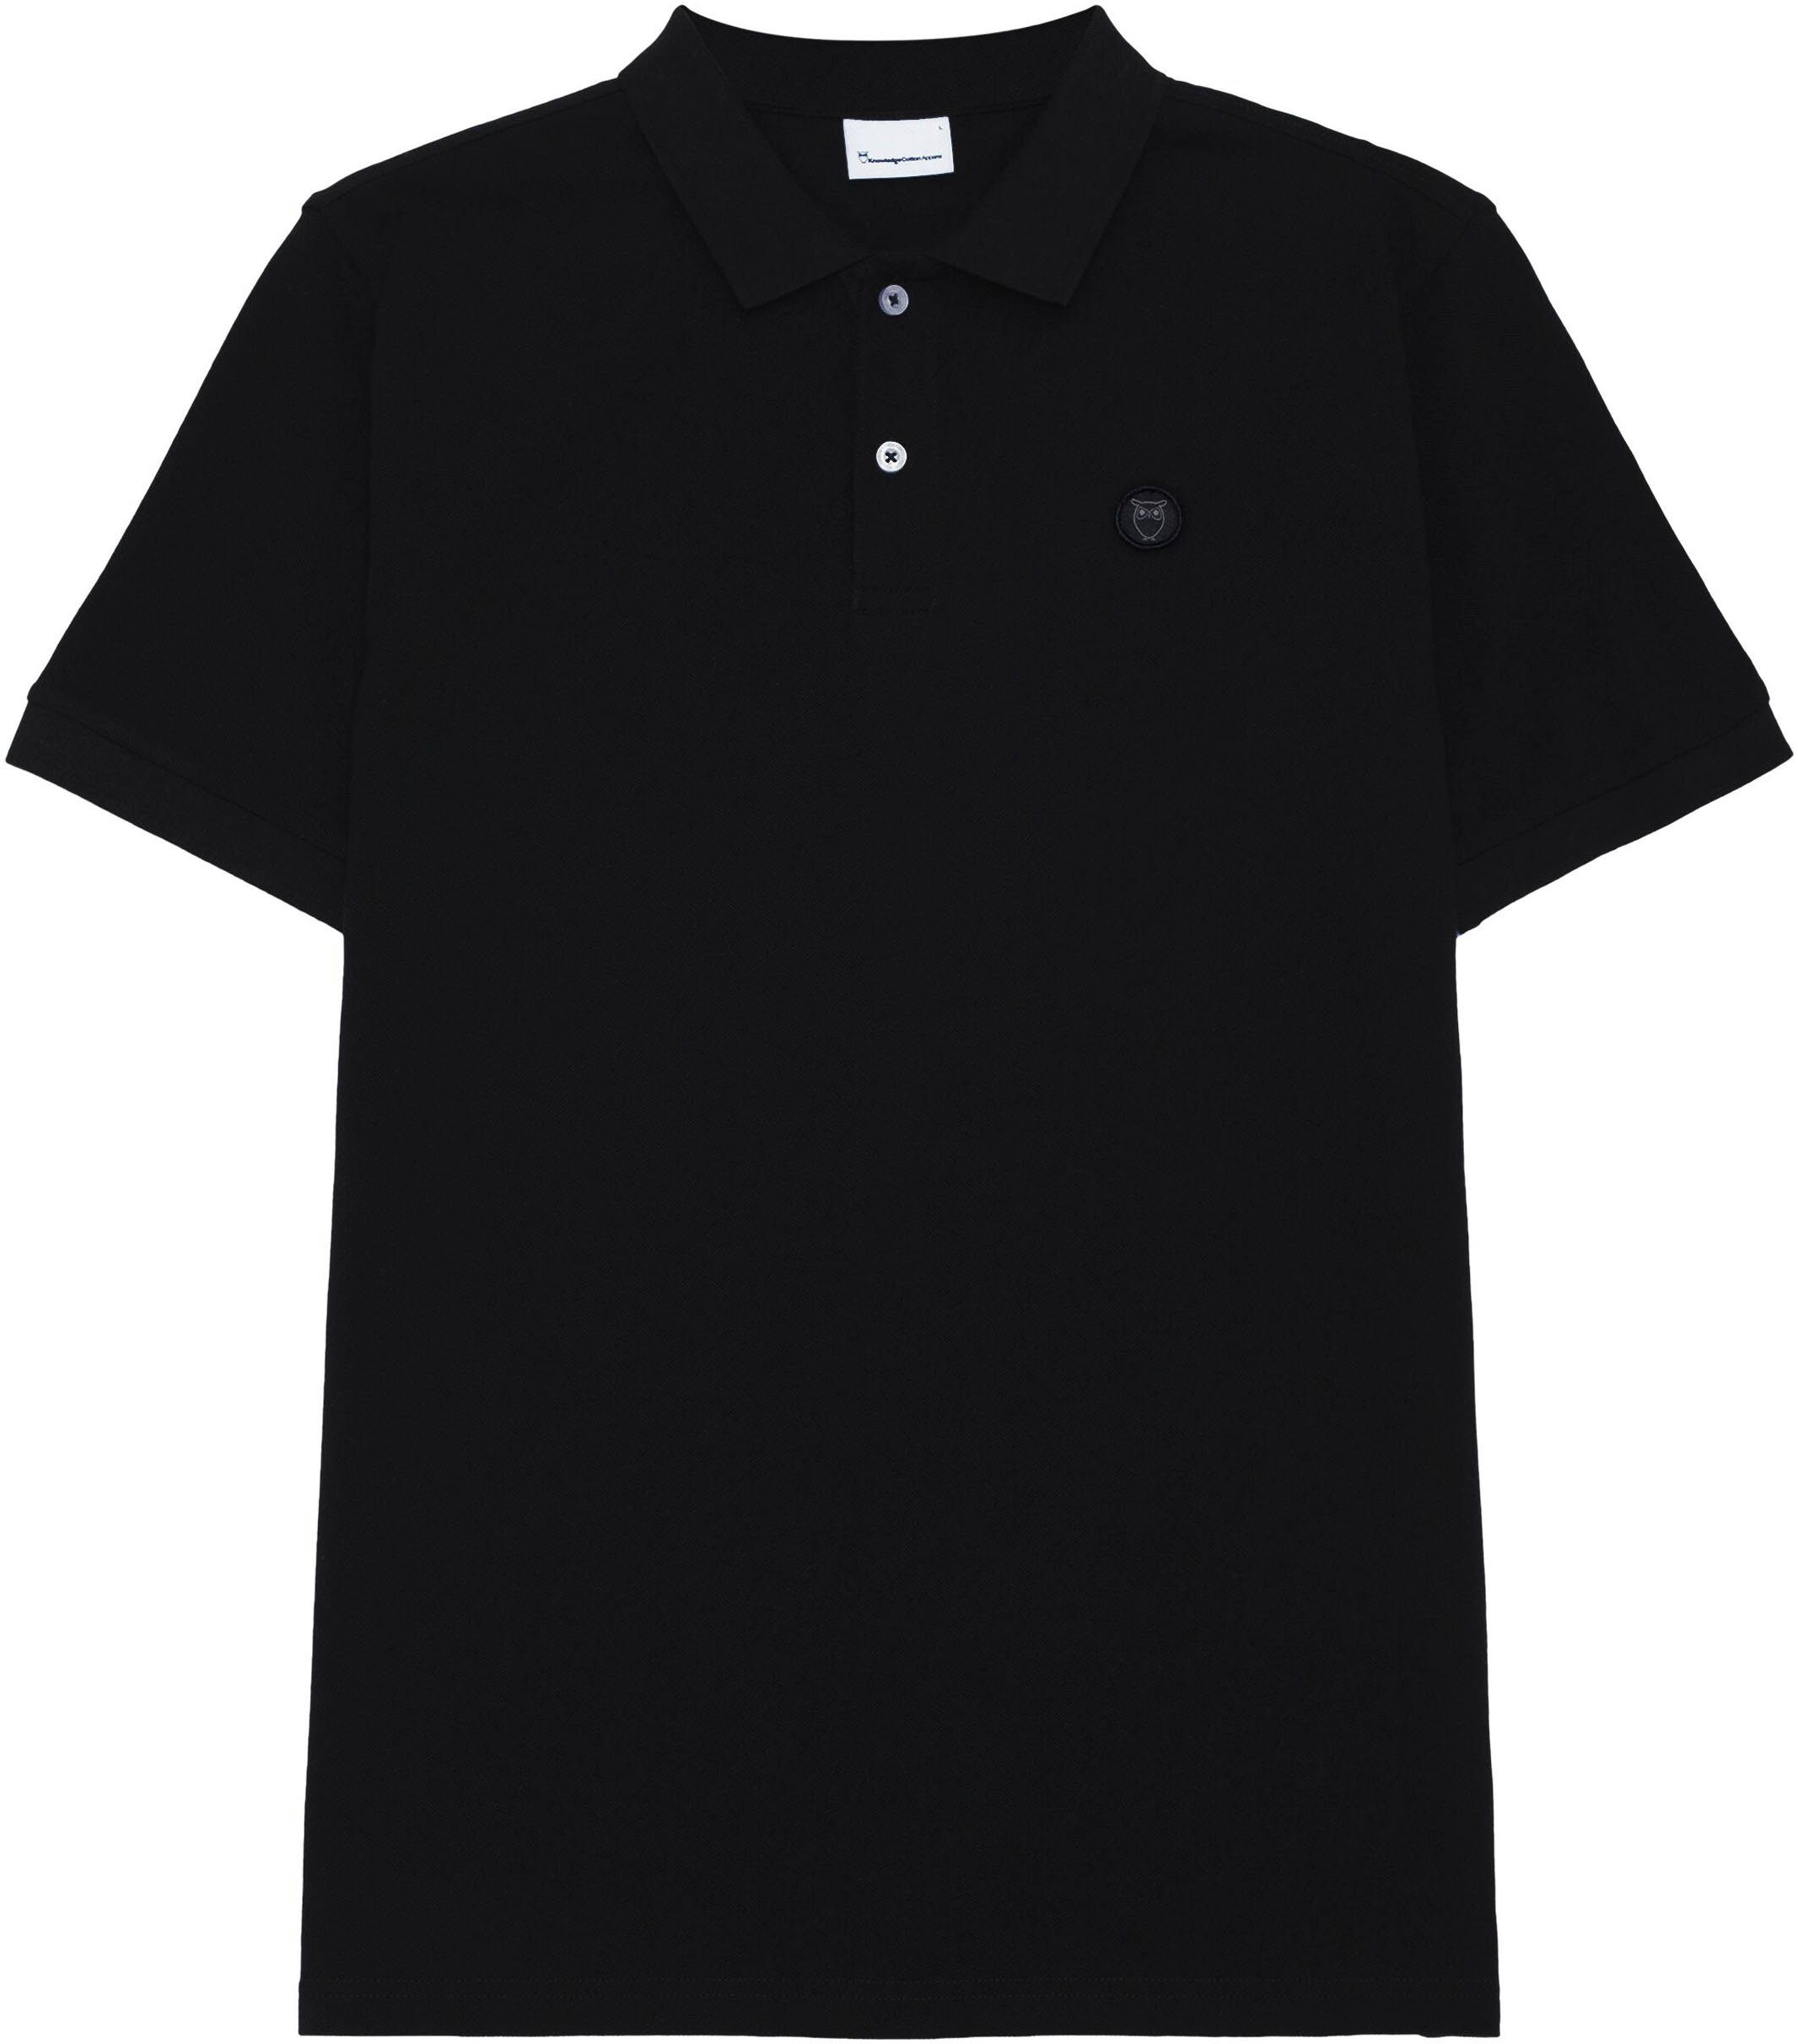 Jet KnowledgeCotton im Poloshirt Apparel Black Look klassischen